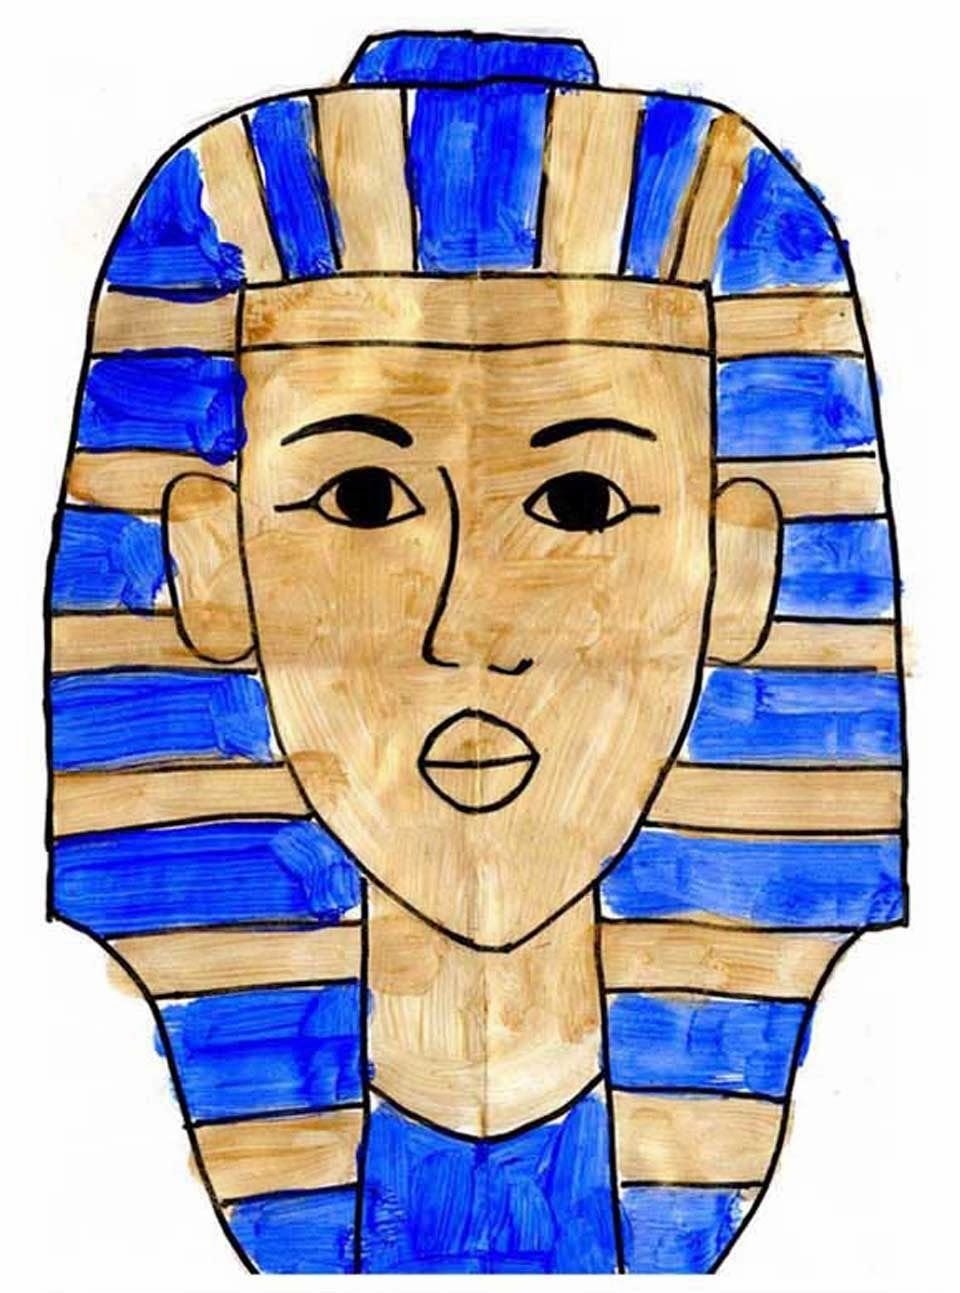 Фараоны древнего Египта Тутанхамон